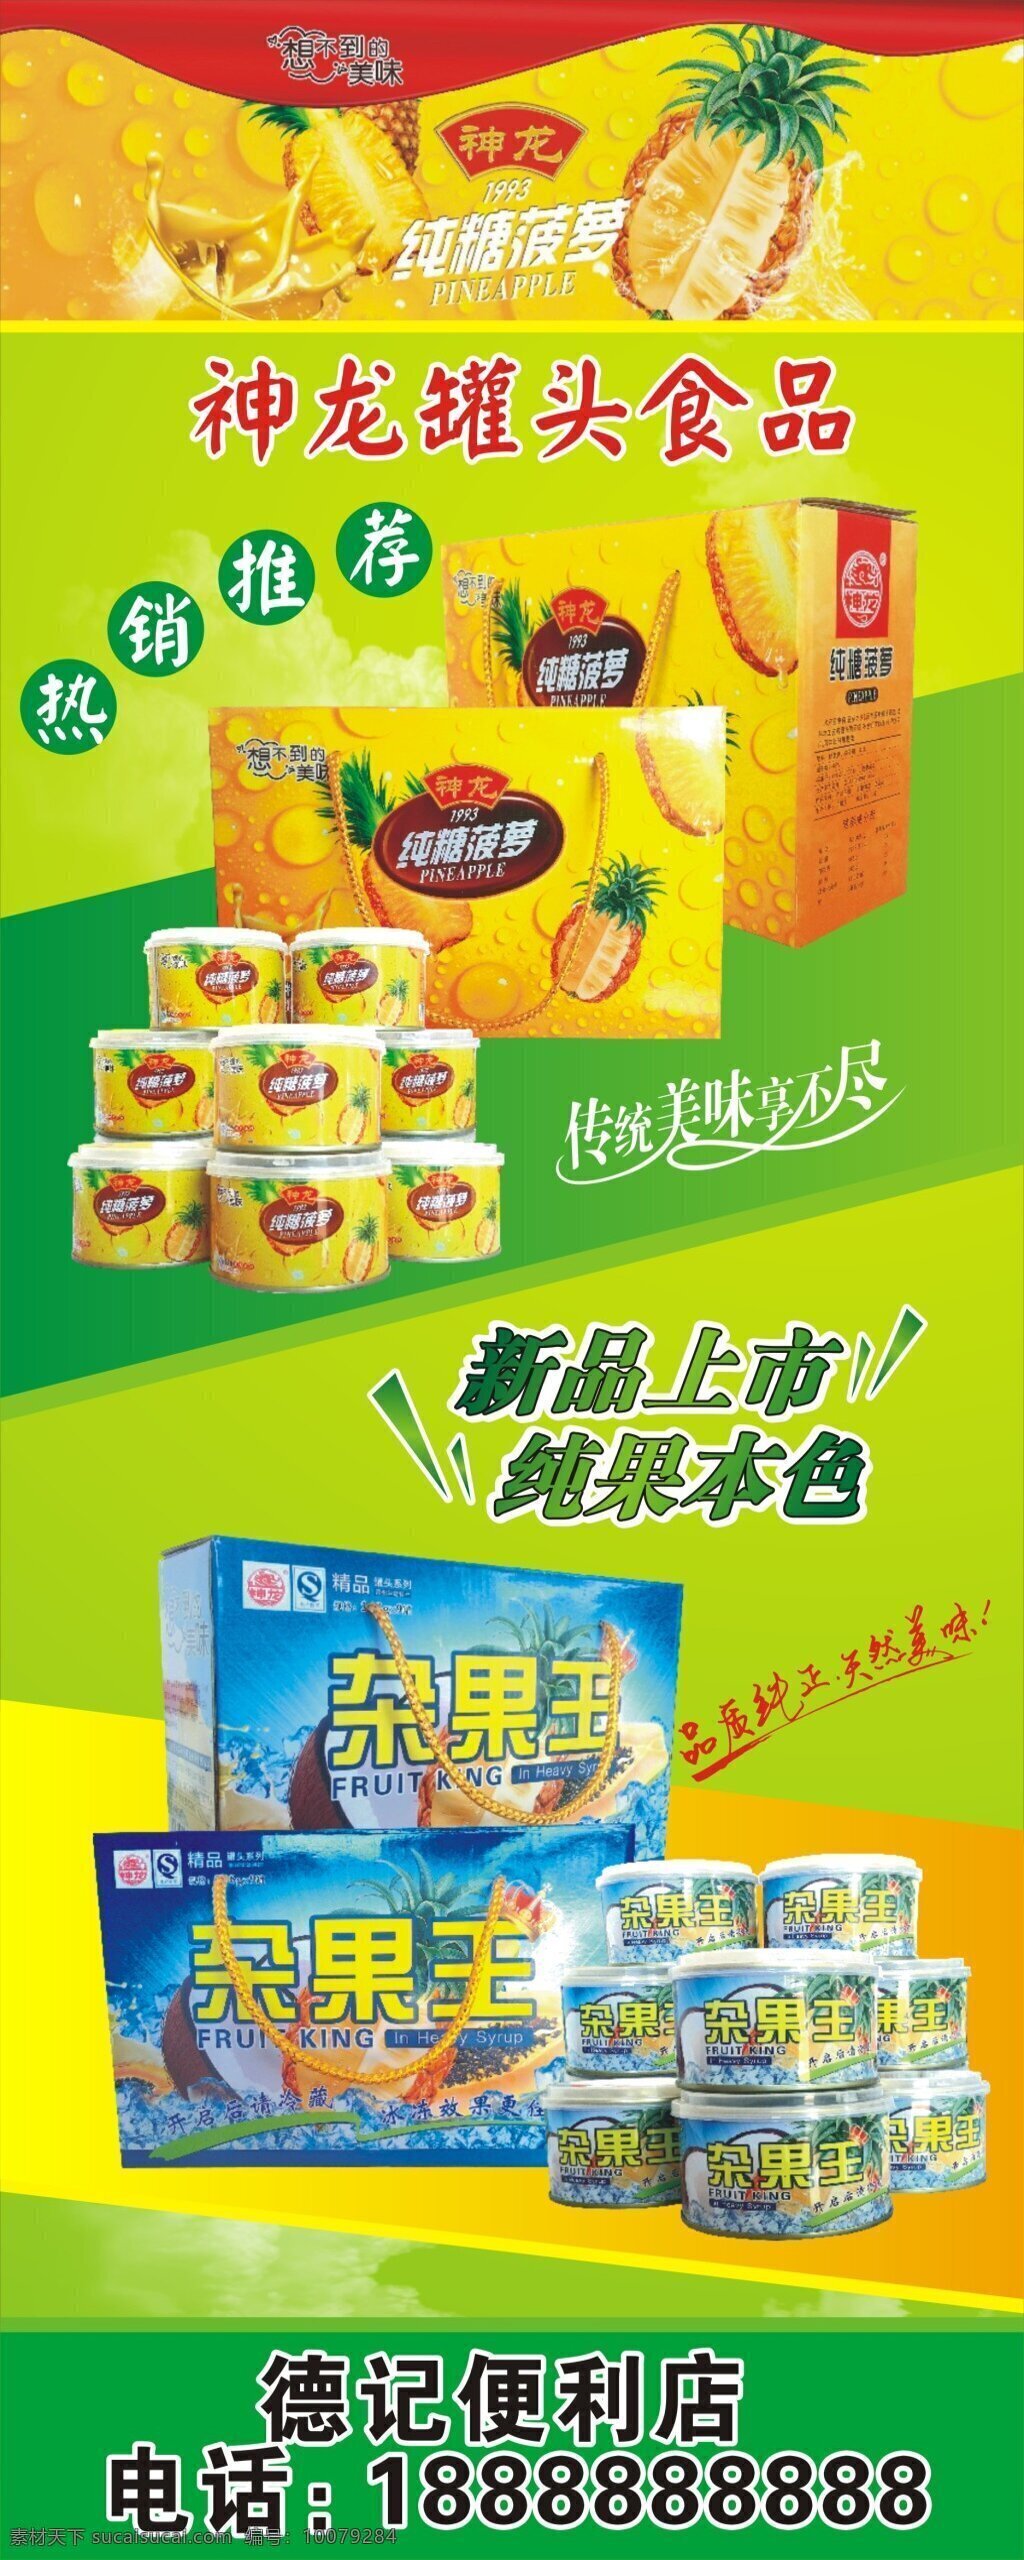 水果罐头海报 菠萝罐头海报 杂果罐头海报 罐头广告 罐头包装 黄色